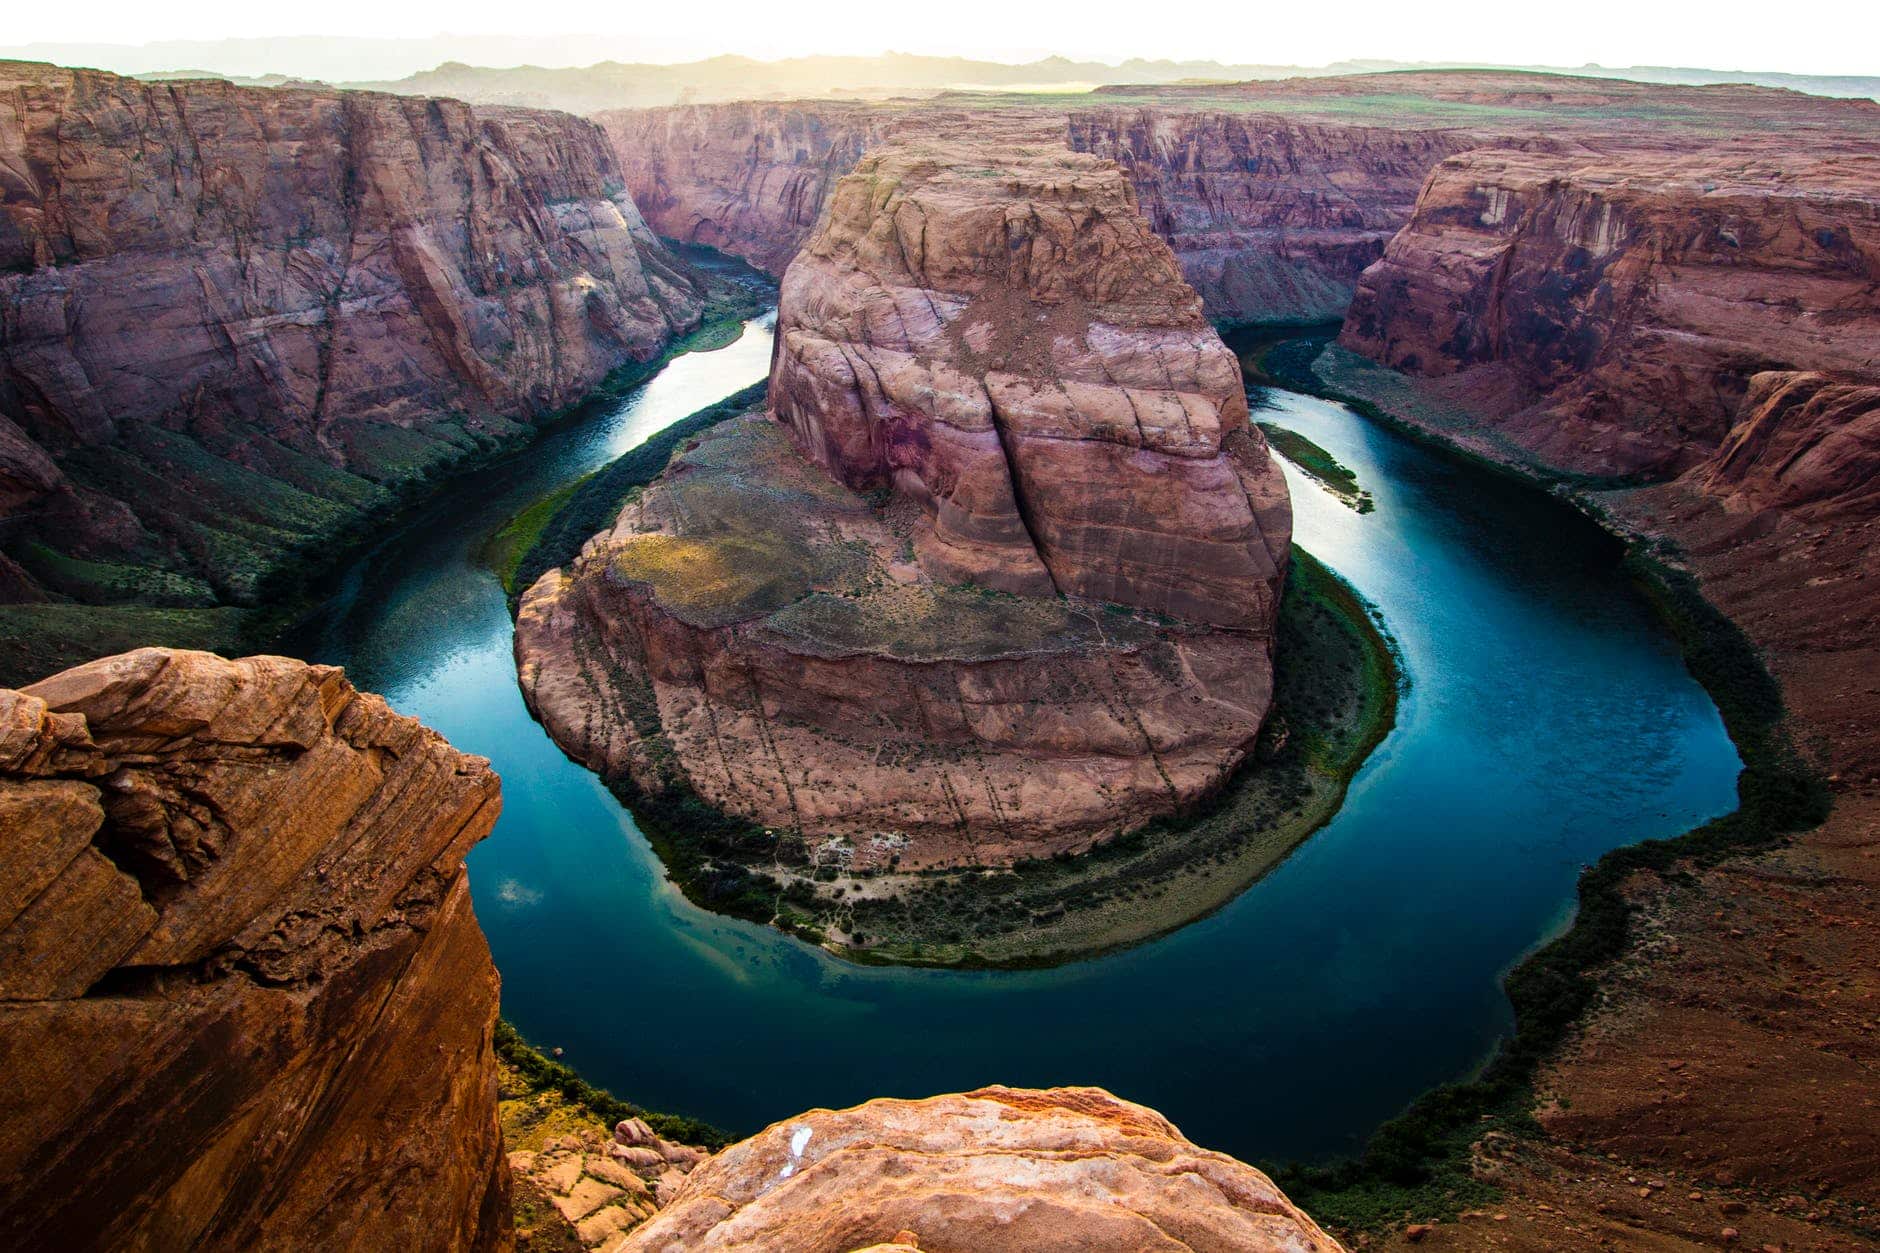 Der Grand Canyon ist ein riesiges Loch im Boden, das der Colorado River über Millionen von Jahren geschaffen hat. birds eye photography of horseshoe bend arizona